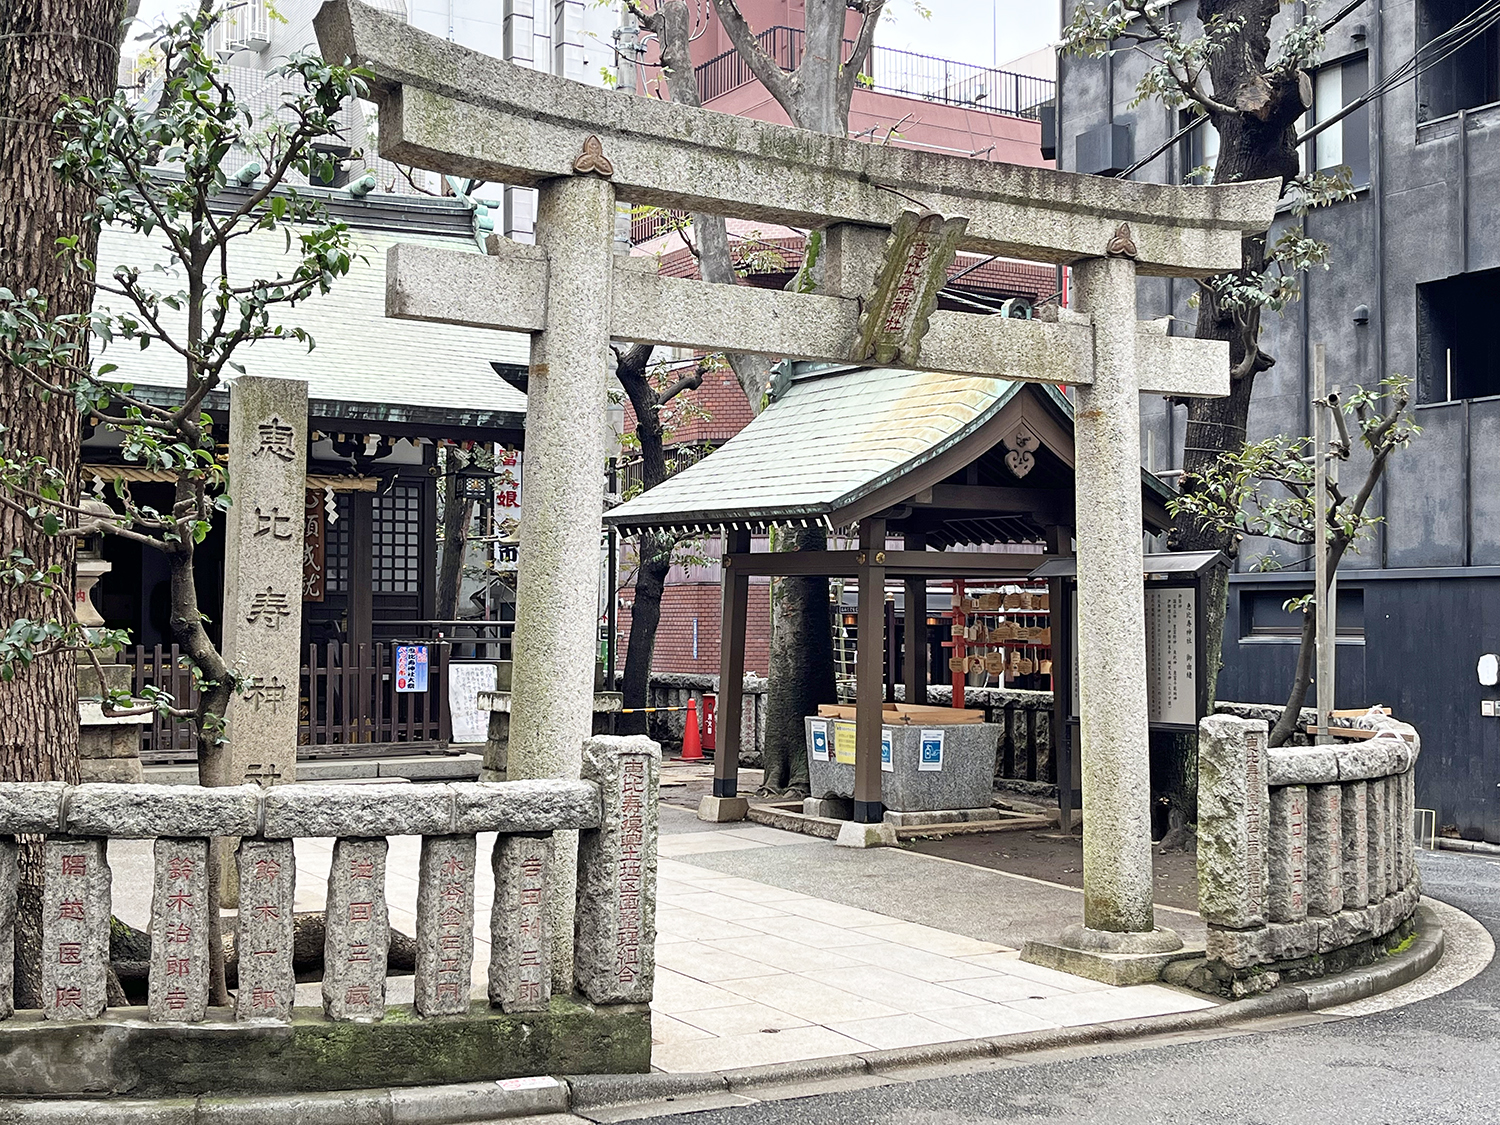 恵比寿神社からすぐの場所にある。